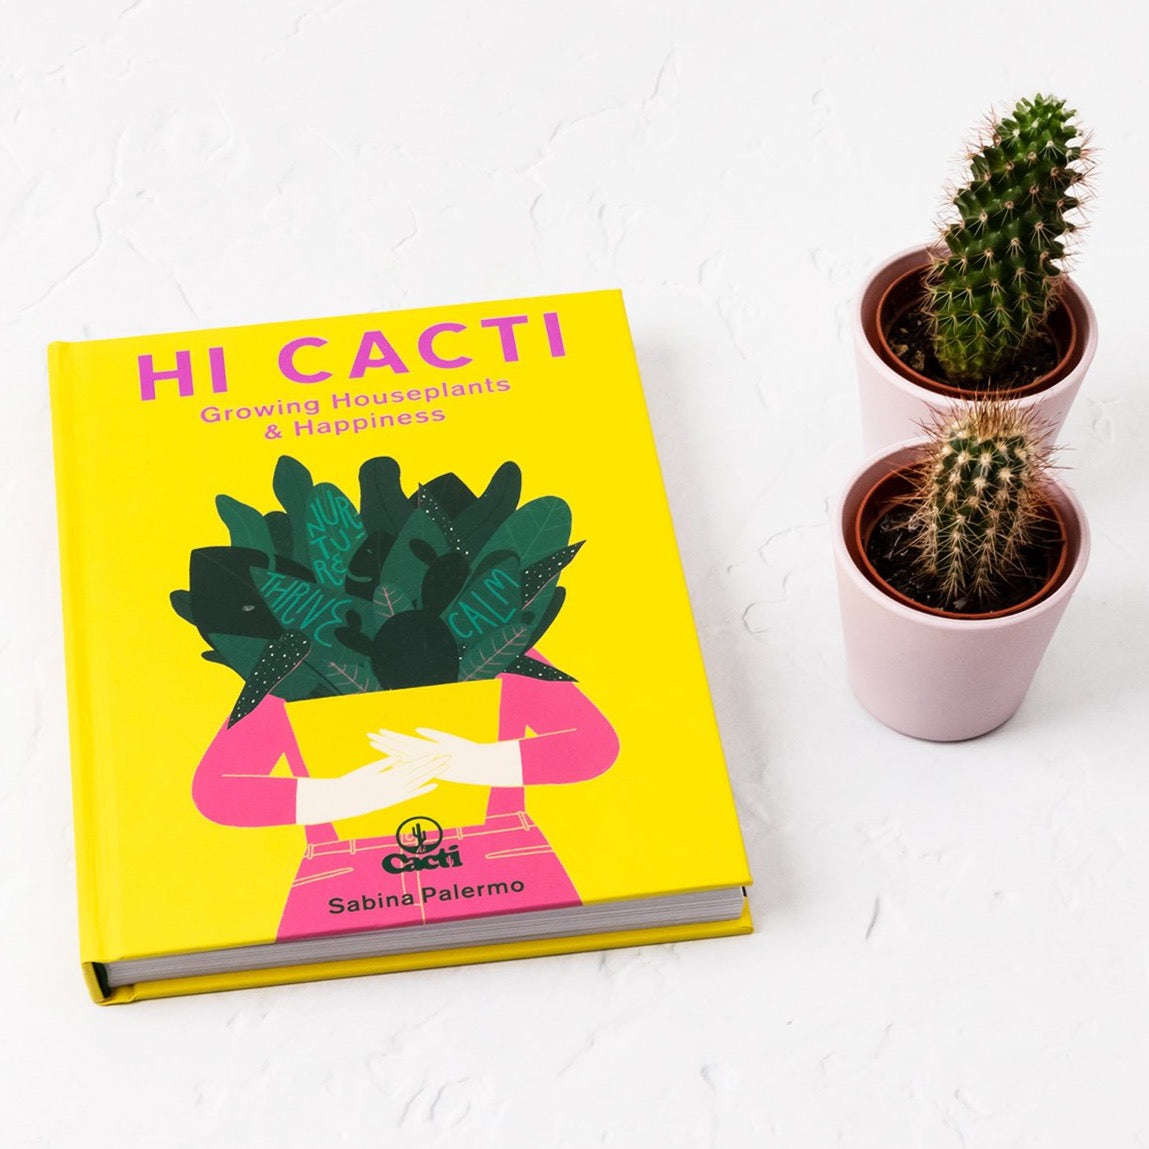 Hi Cacti: Growing Houseplants & Happiness hardcover book